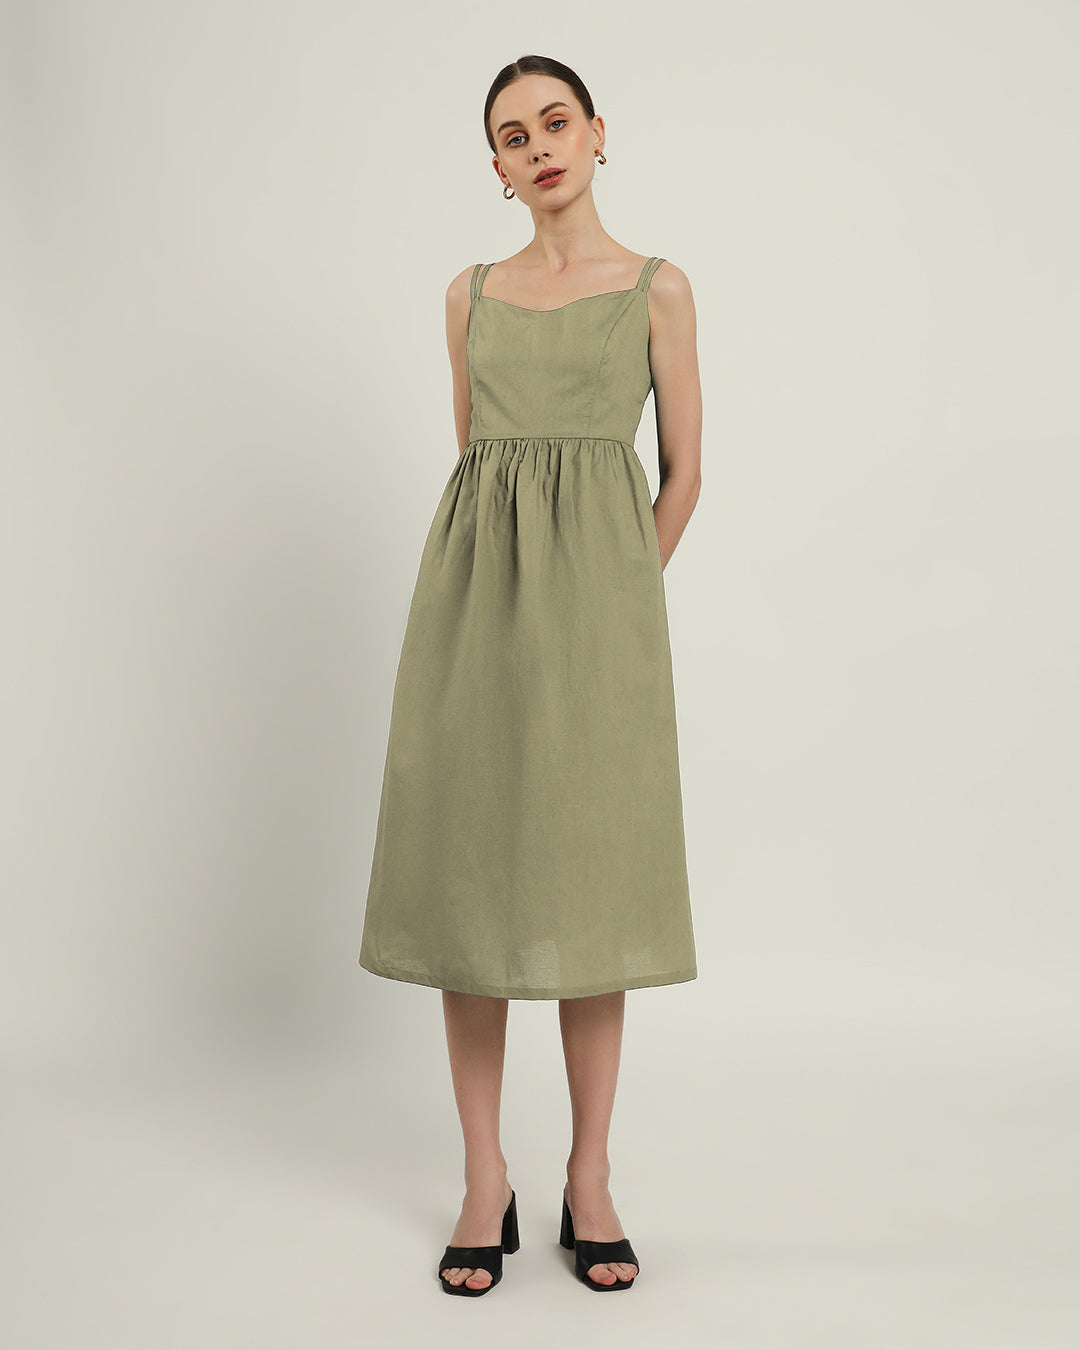 The Haiti Daisy Olive Linen Dress